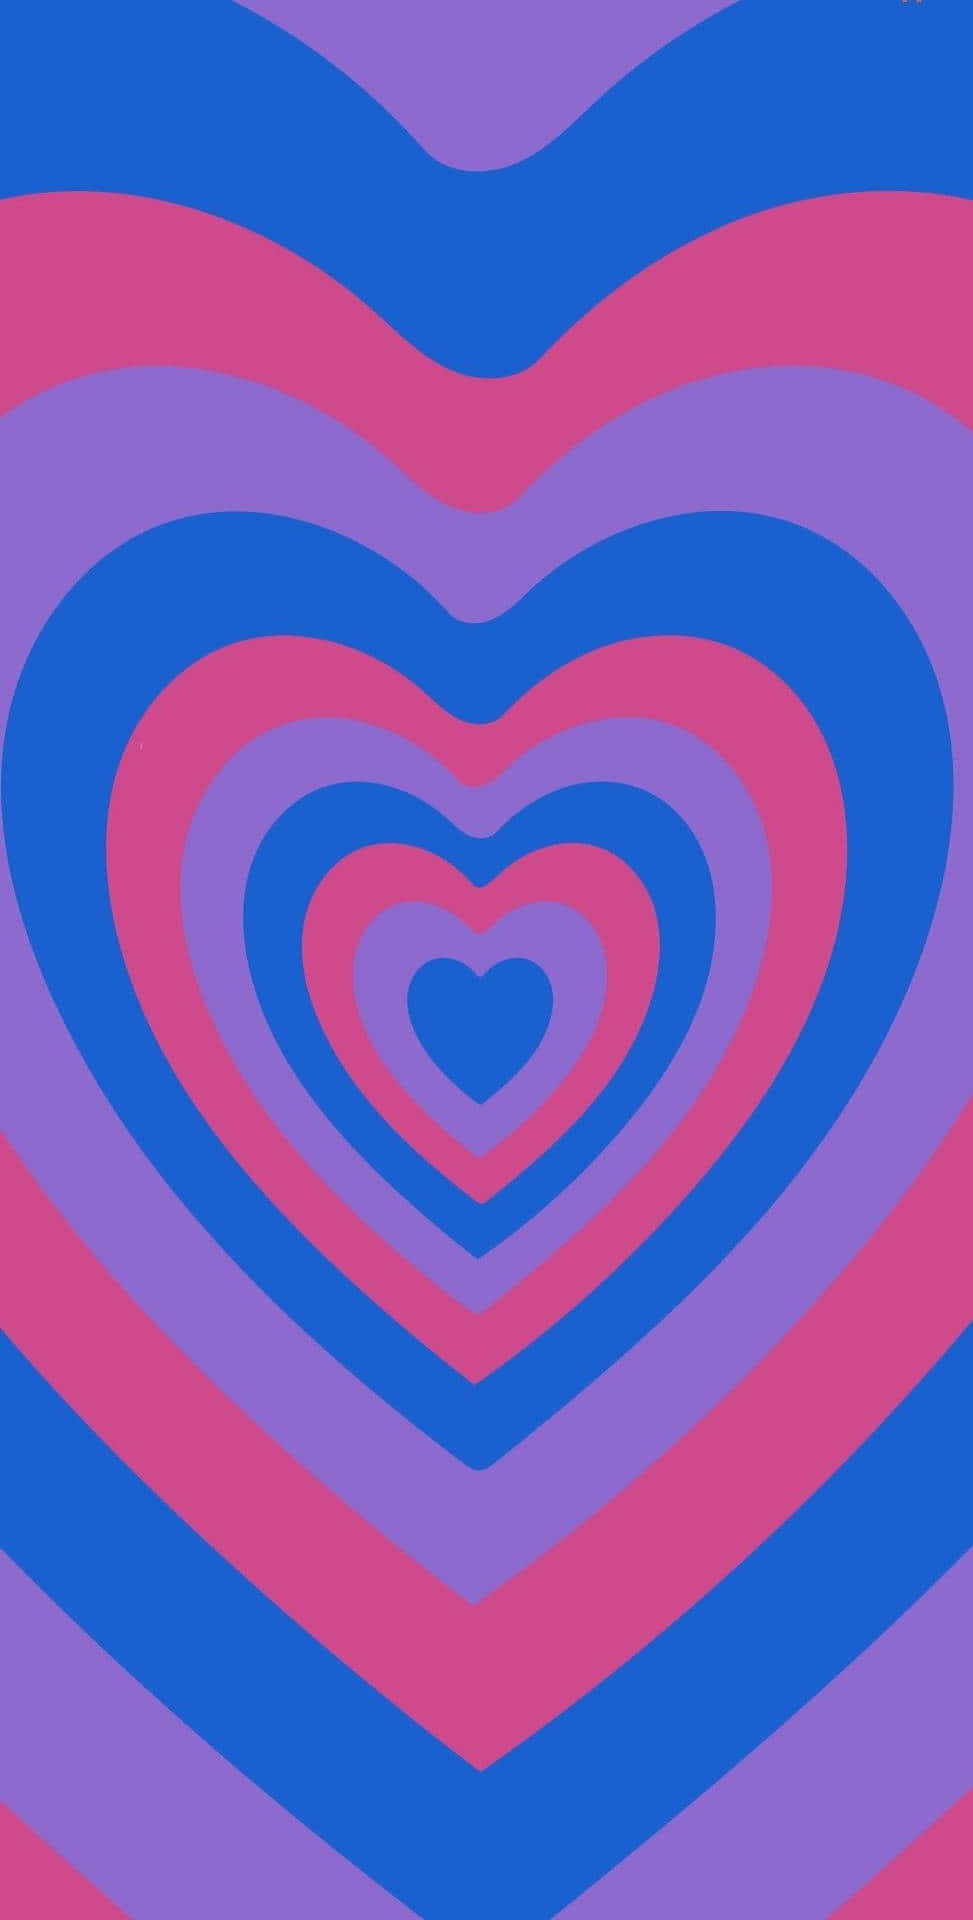 The Millennium Love - Y2k Heart Background